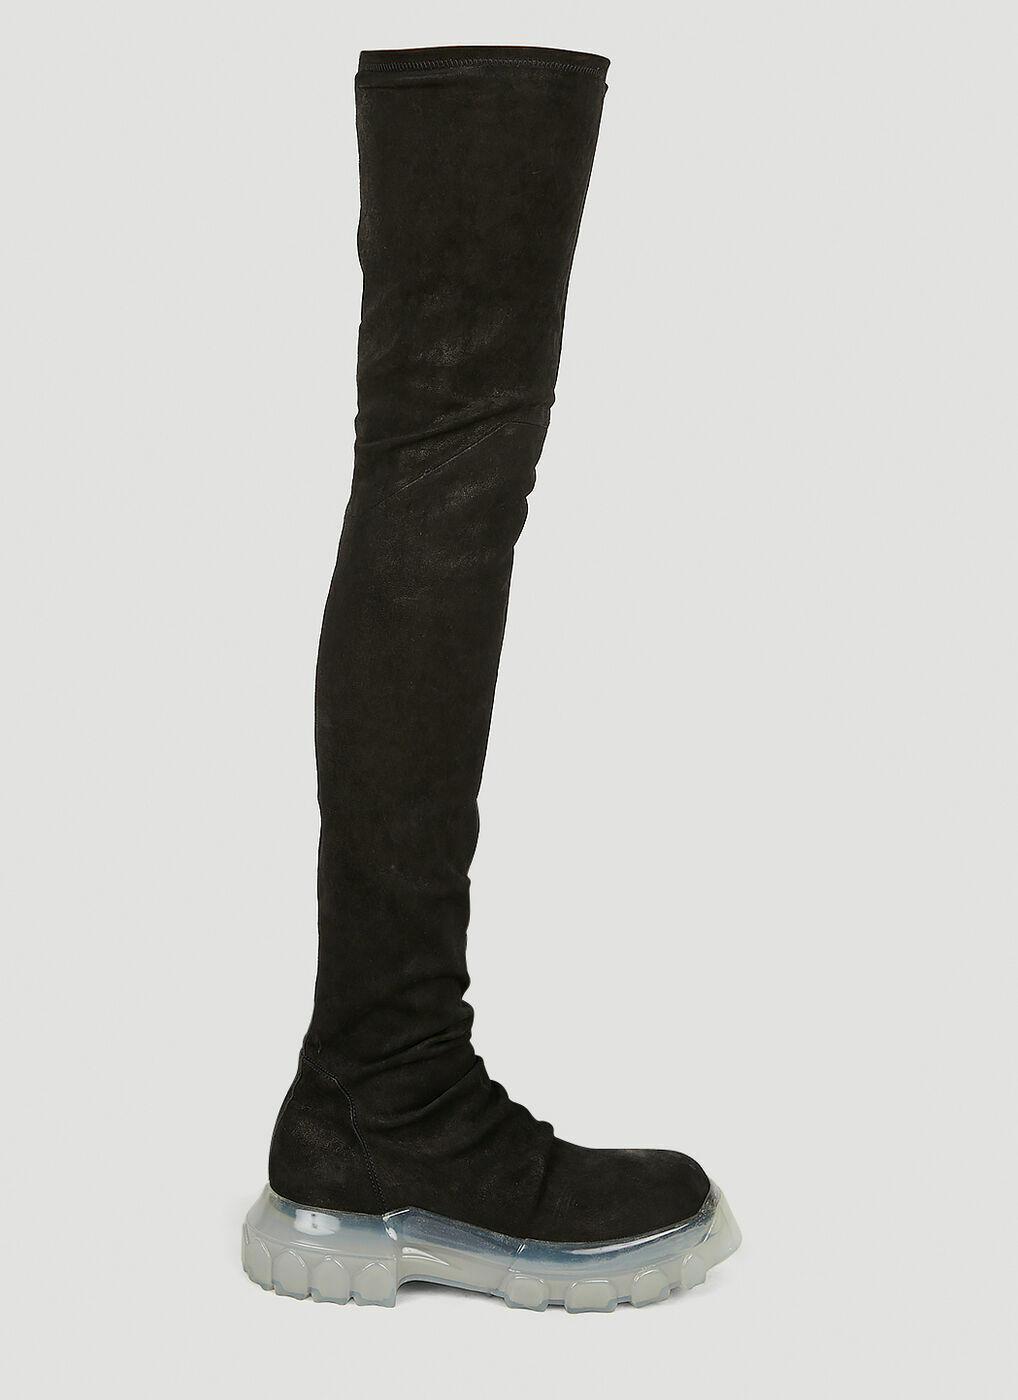 Bozo Lug Sole Boots in Black